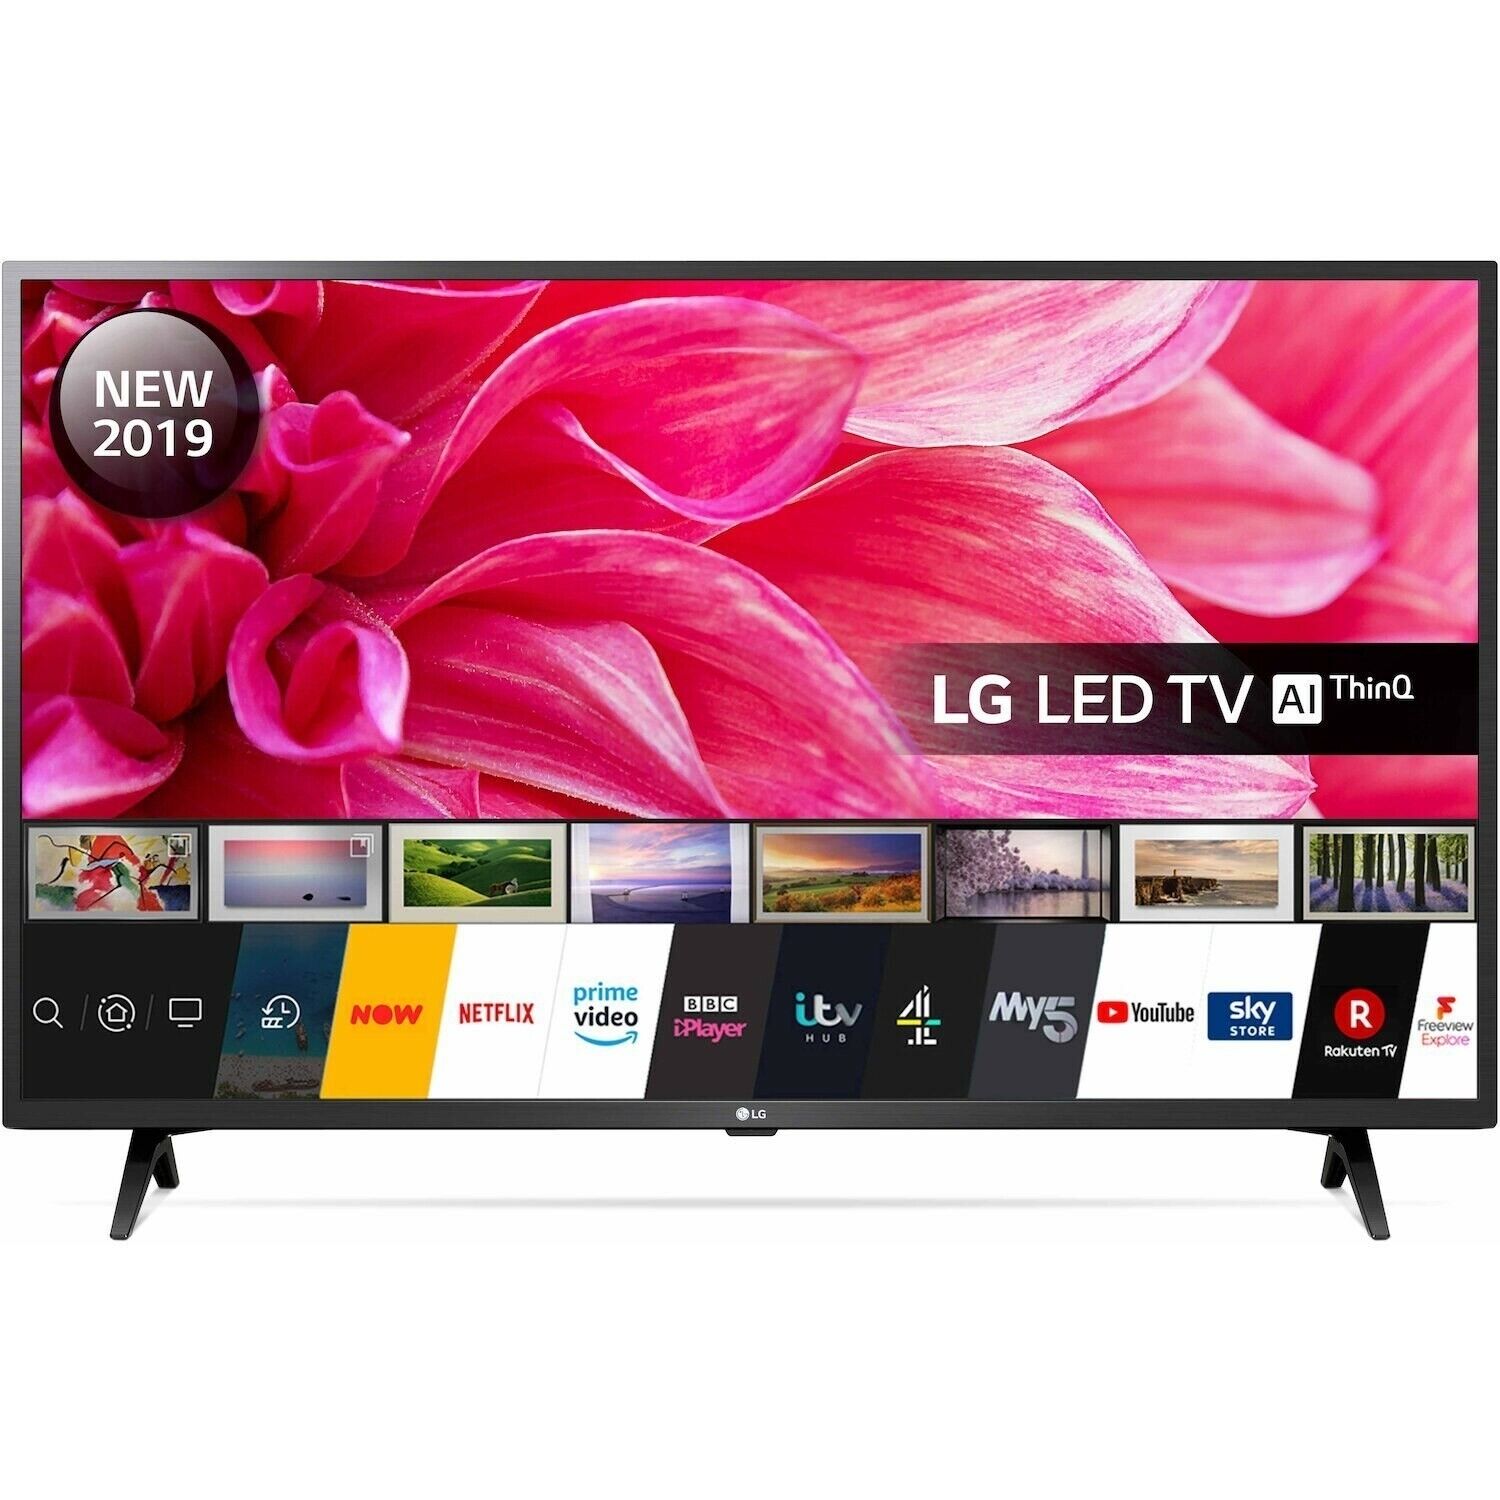 LG 43 Inch 43LM6300 Smart Full HD HDR LED TV U | eBay